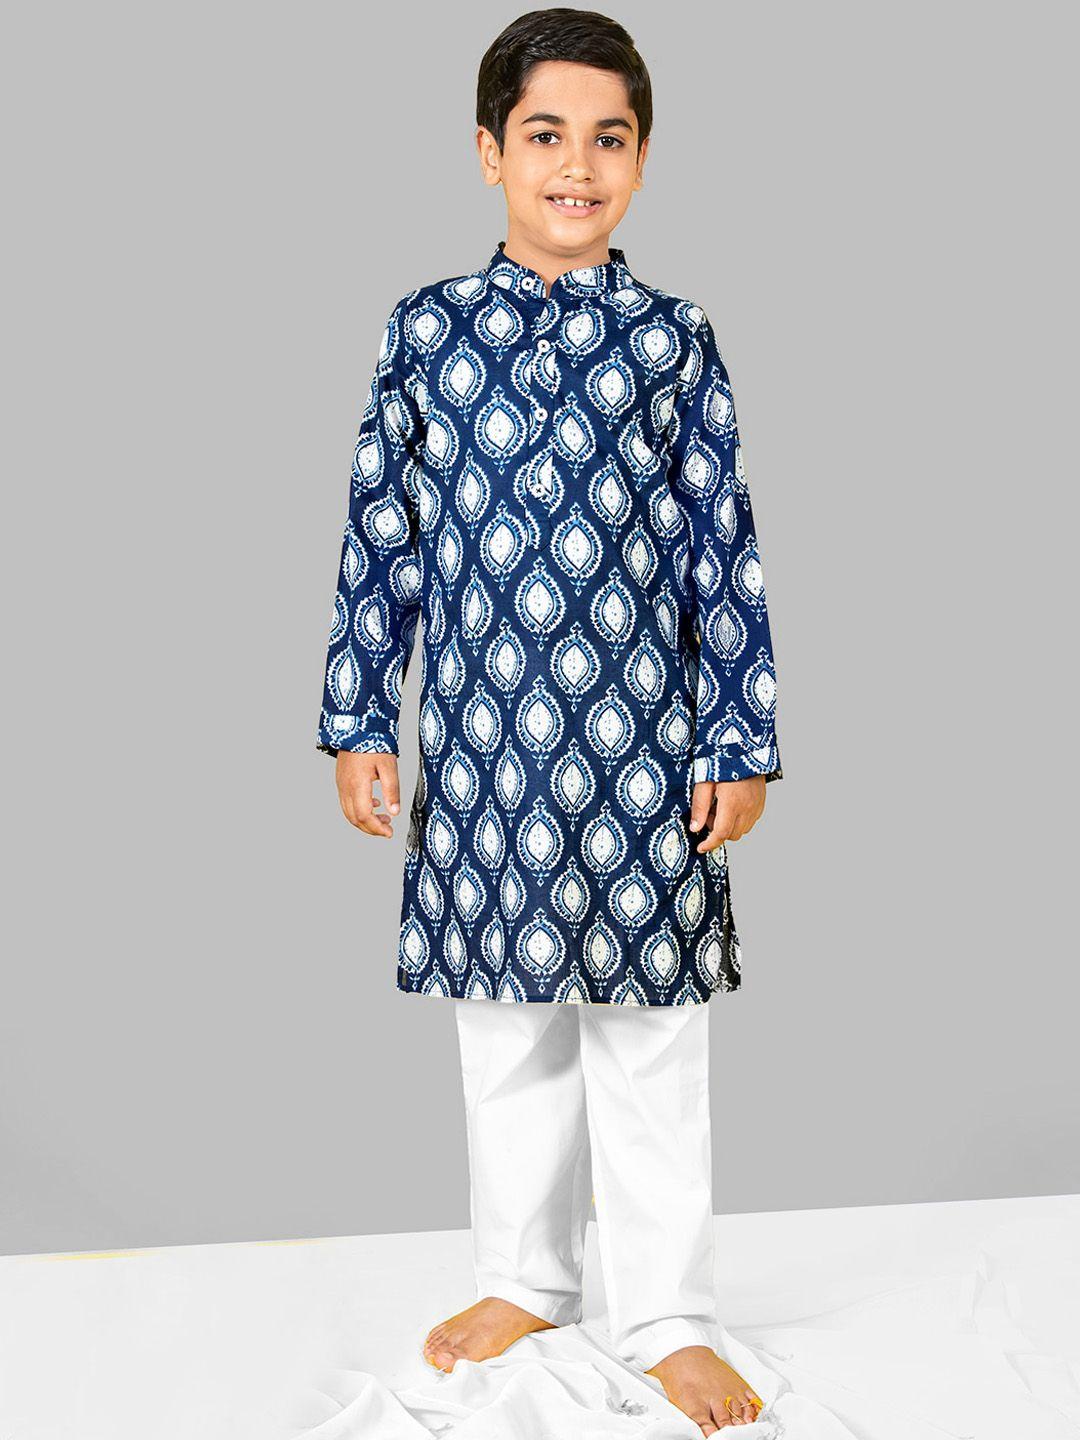 naughty ninos boys ethnic motifs printed kurta with pyjamas